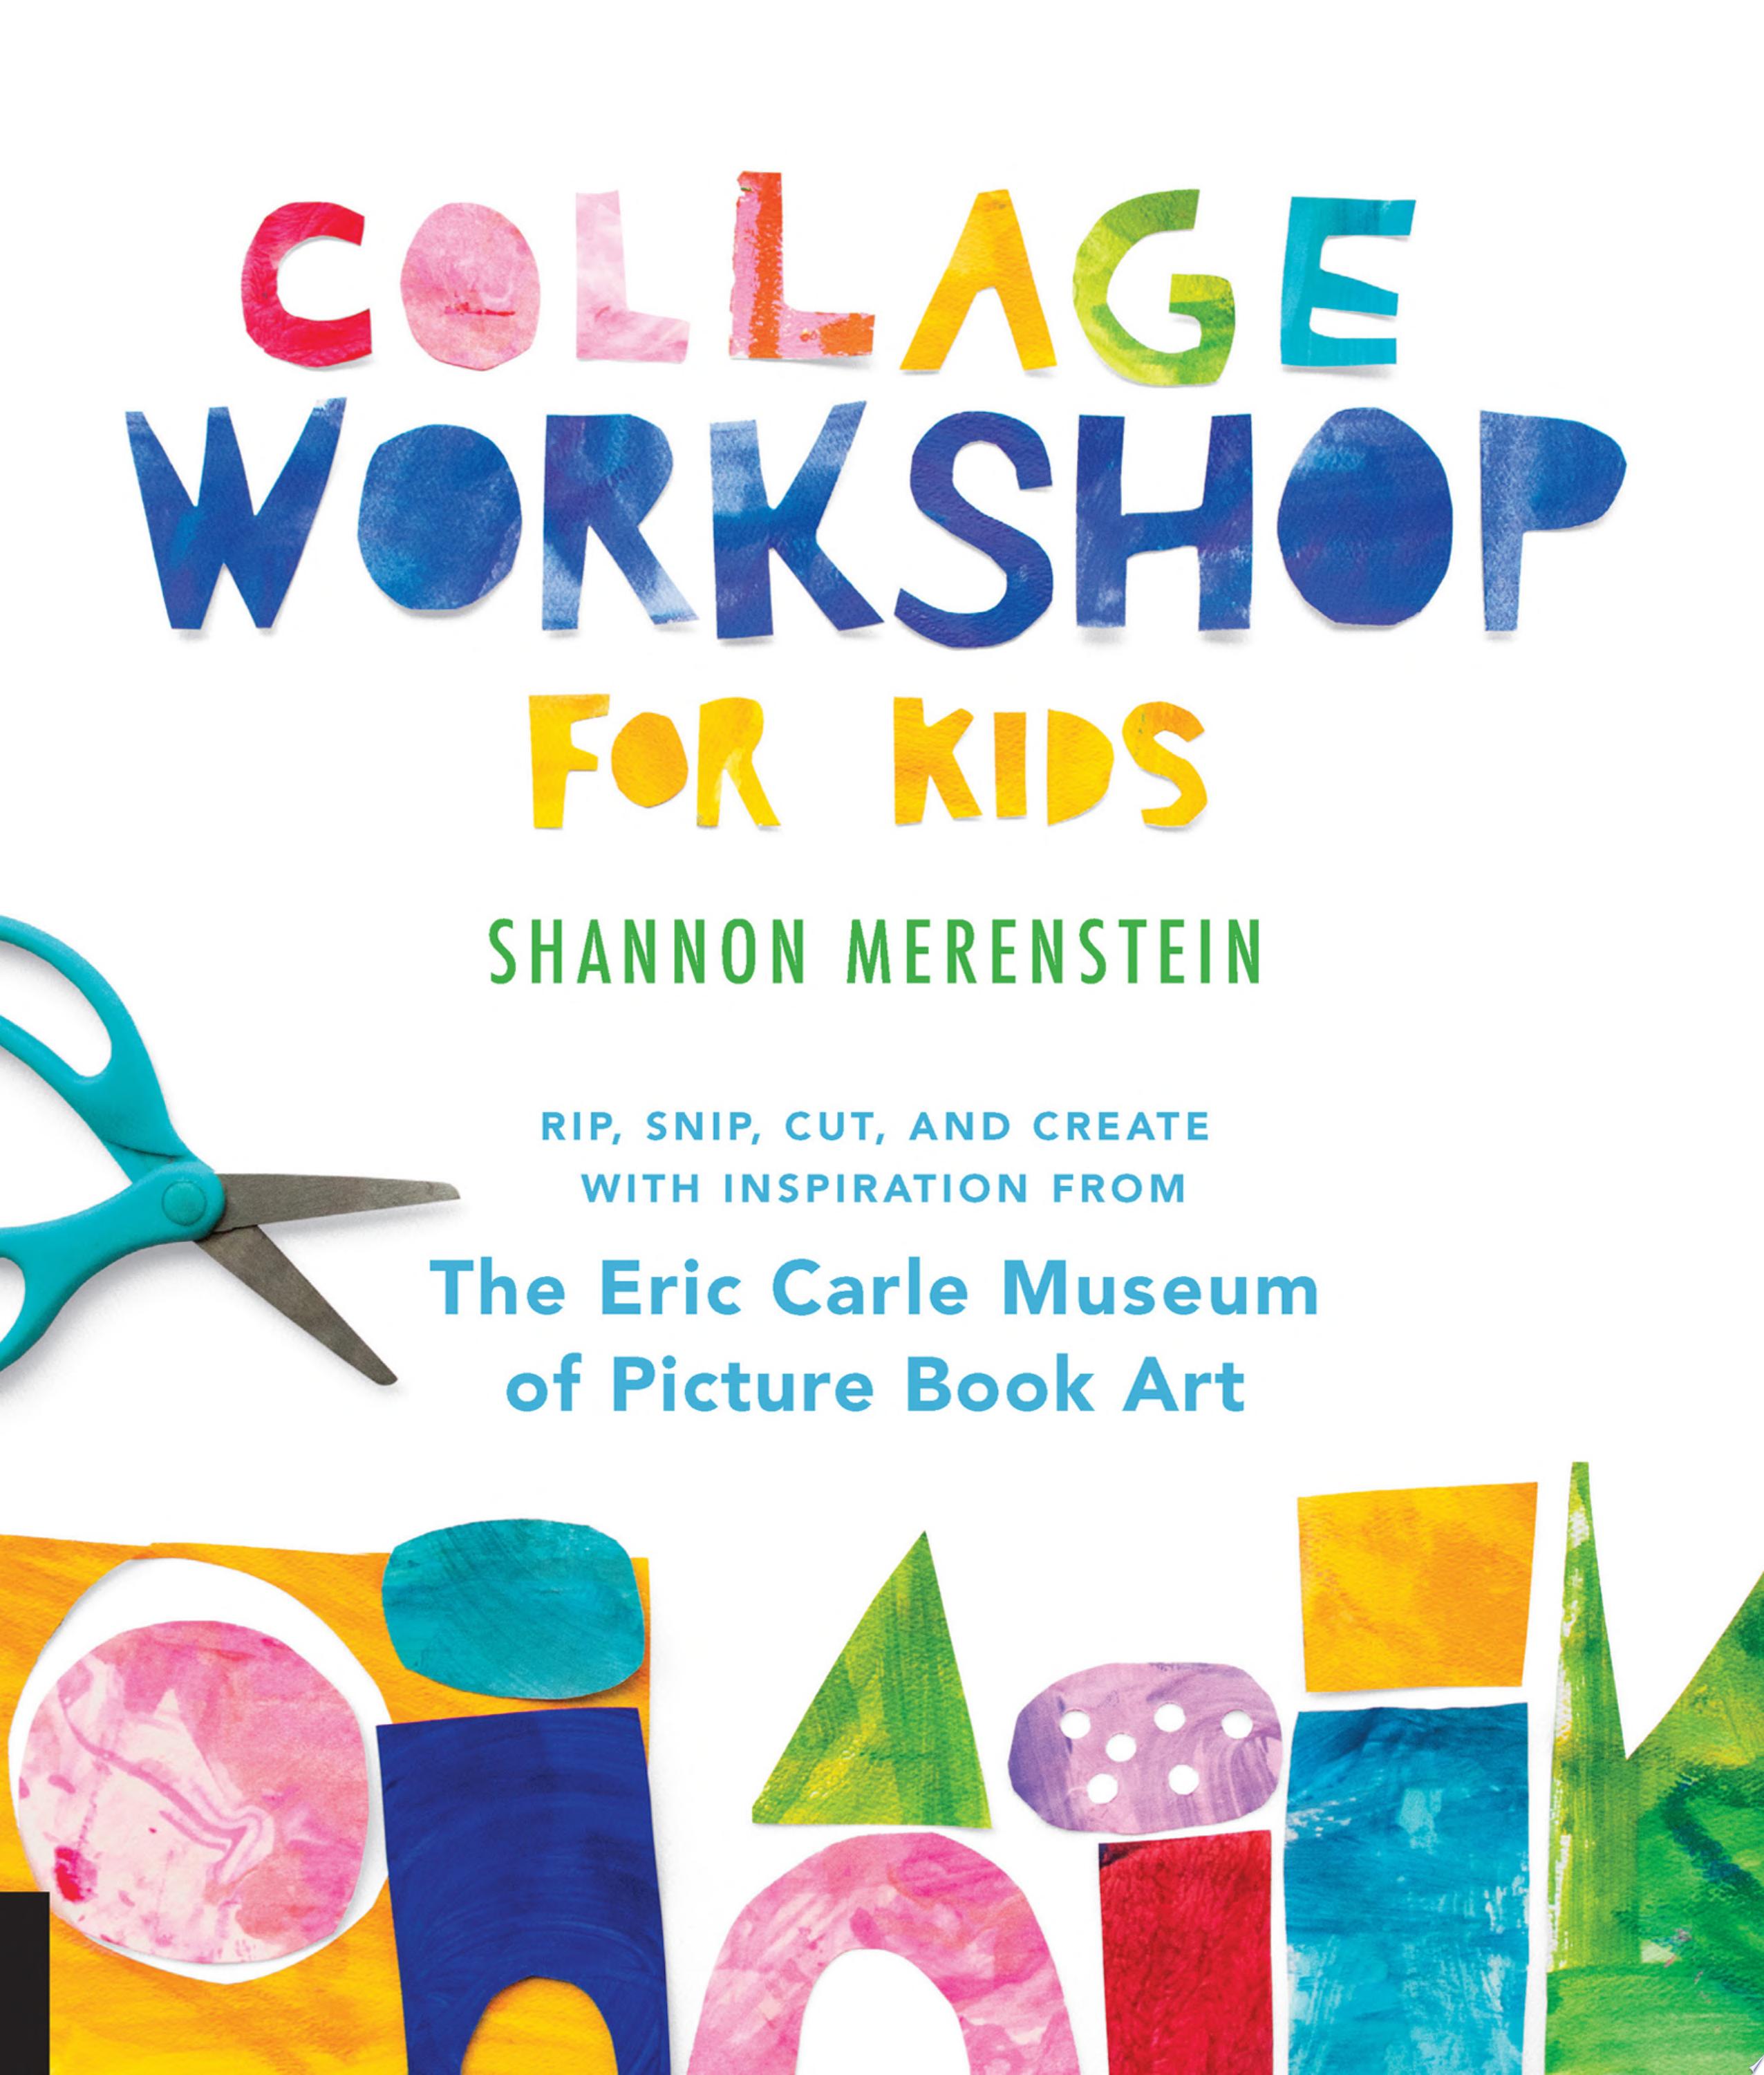 Image for "Collage Workshop for Kids"